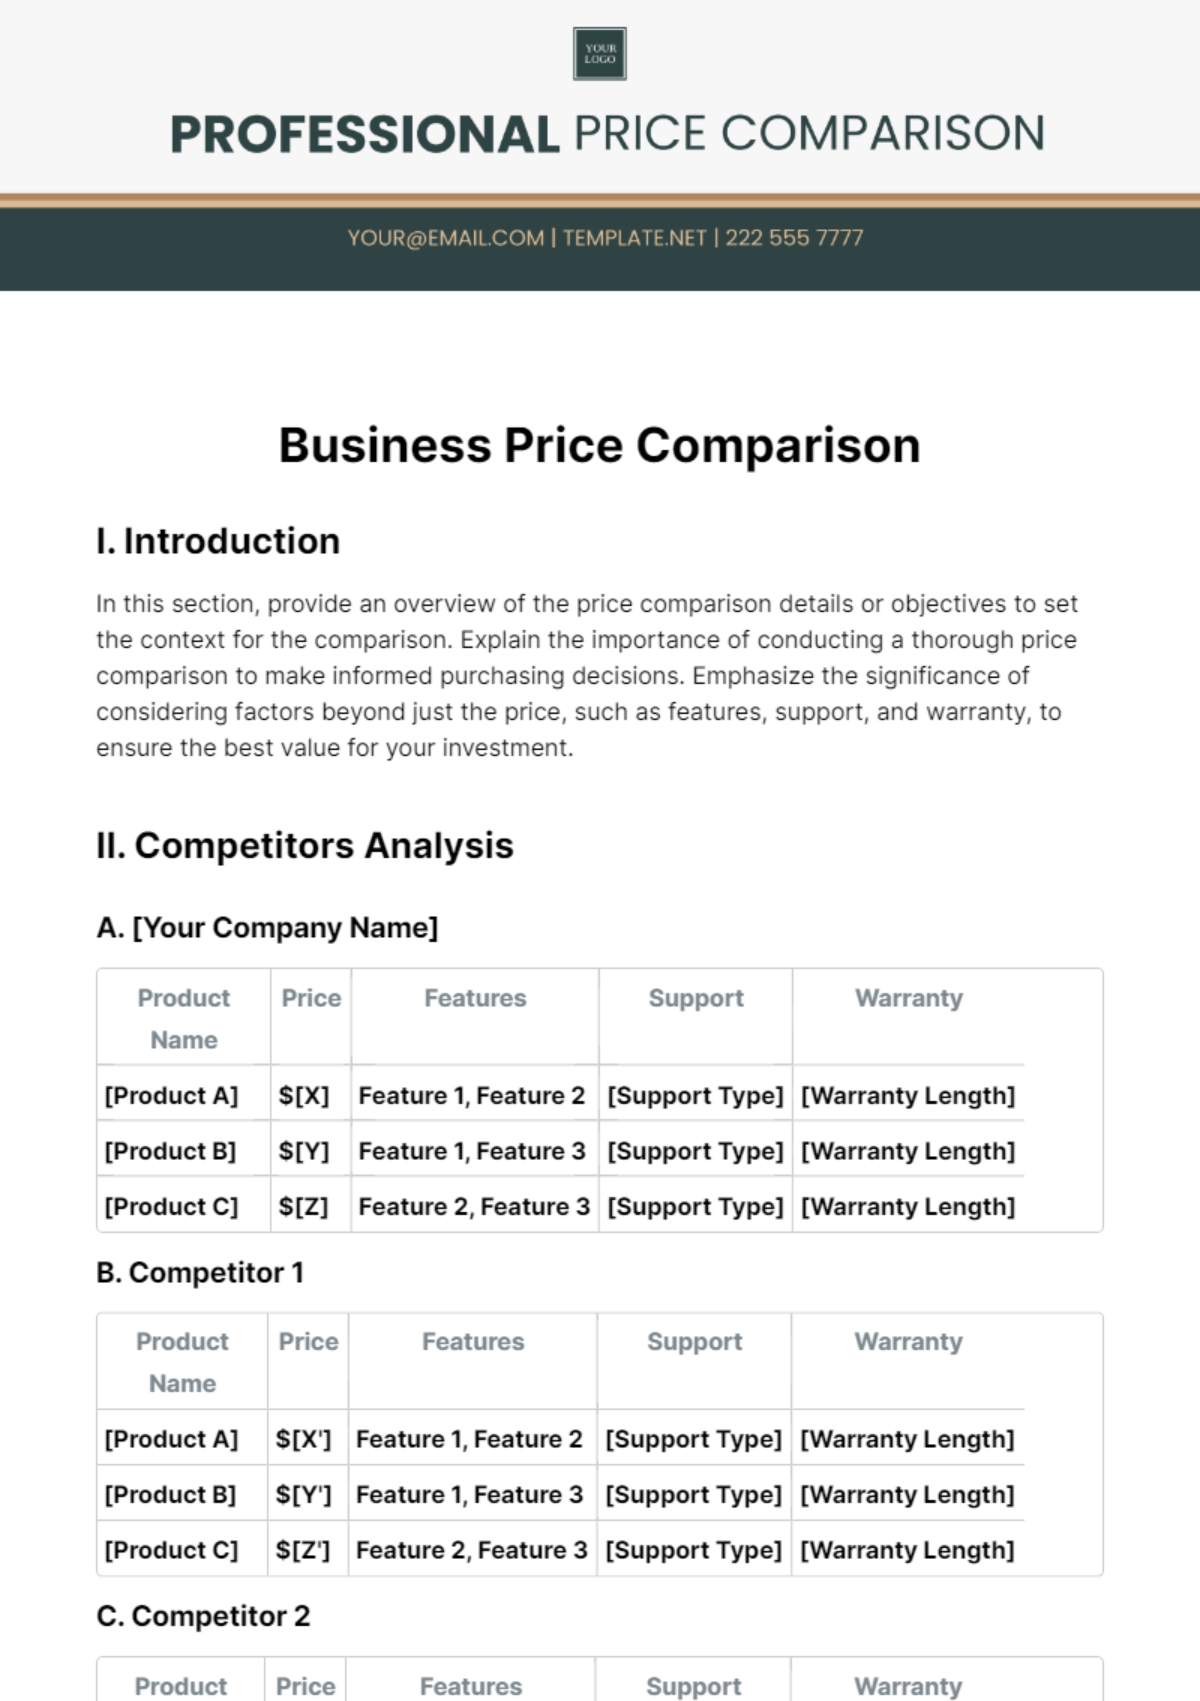 Business Price Comparison Template